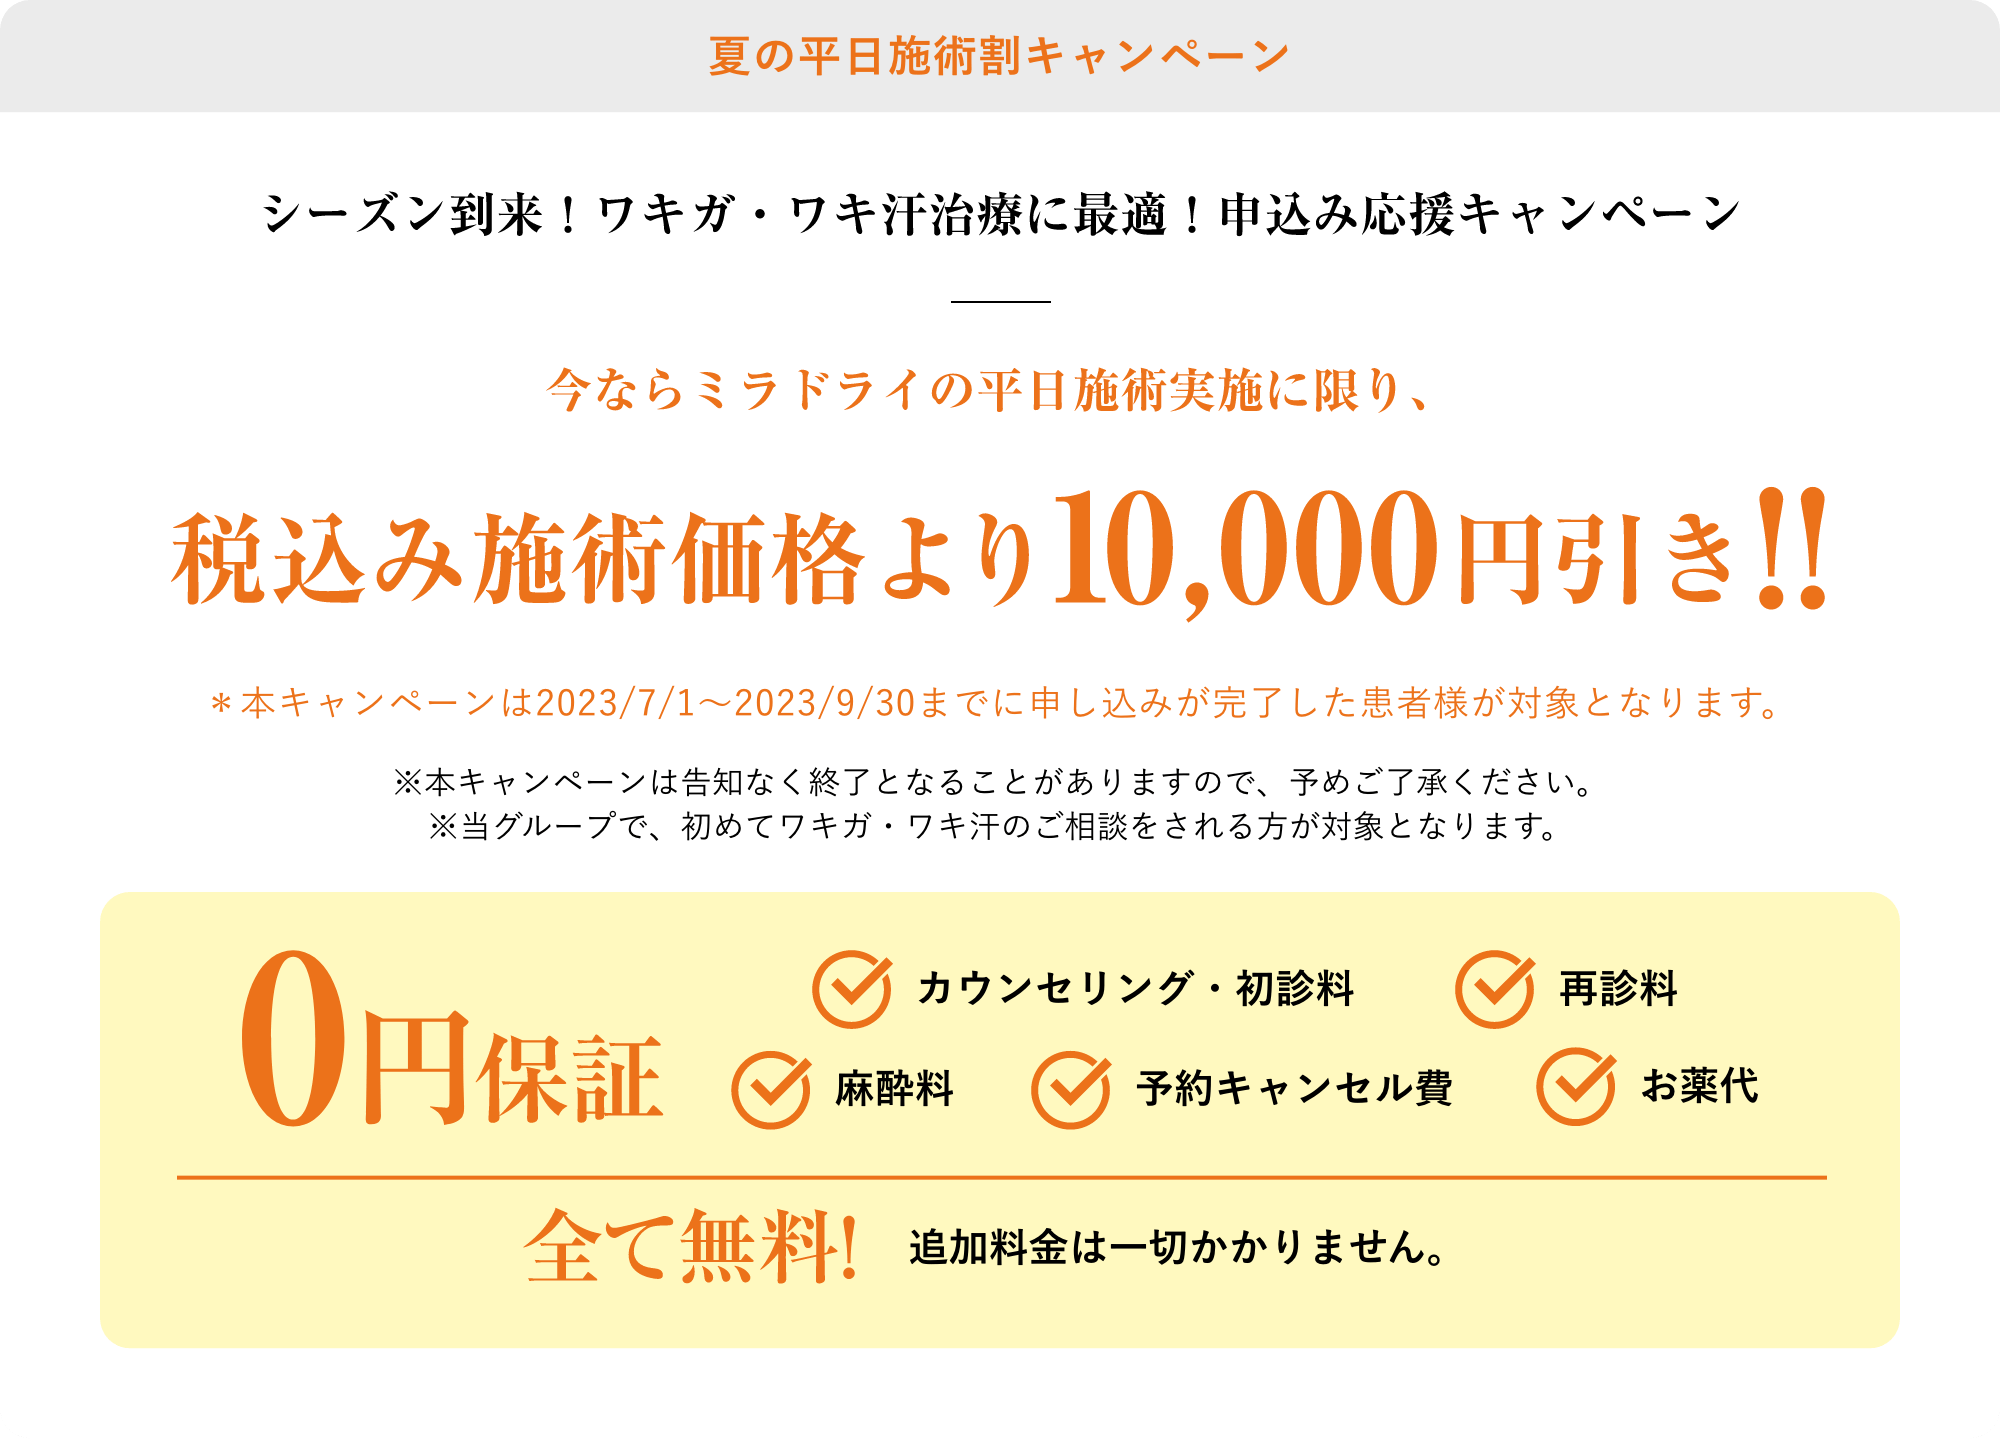 夏の平日施術割キャンペーン税込み施術価格より10,000円引き！！